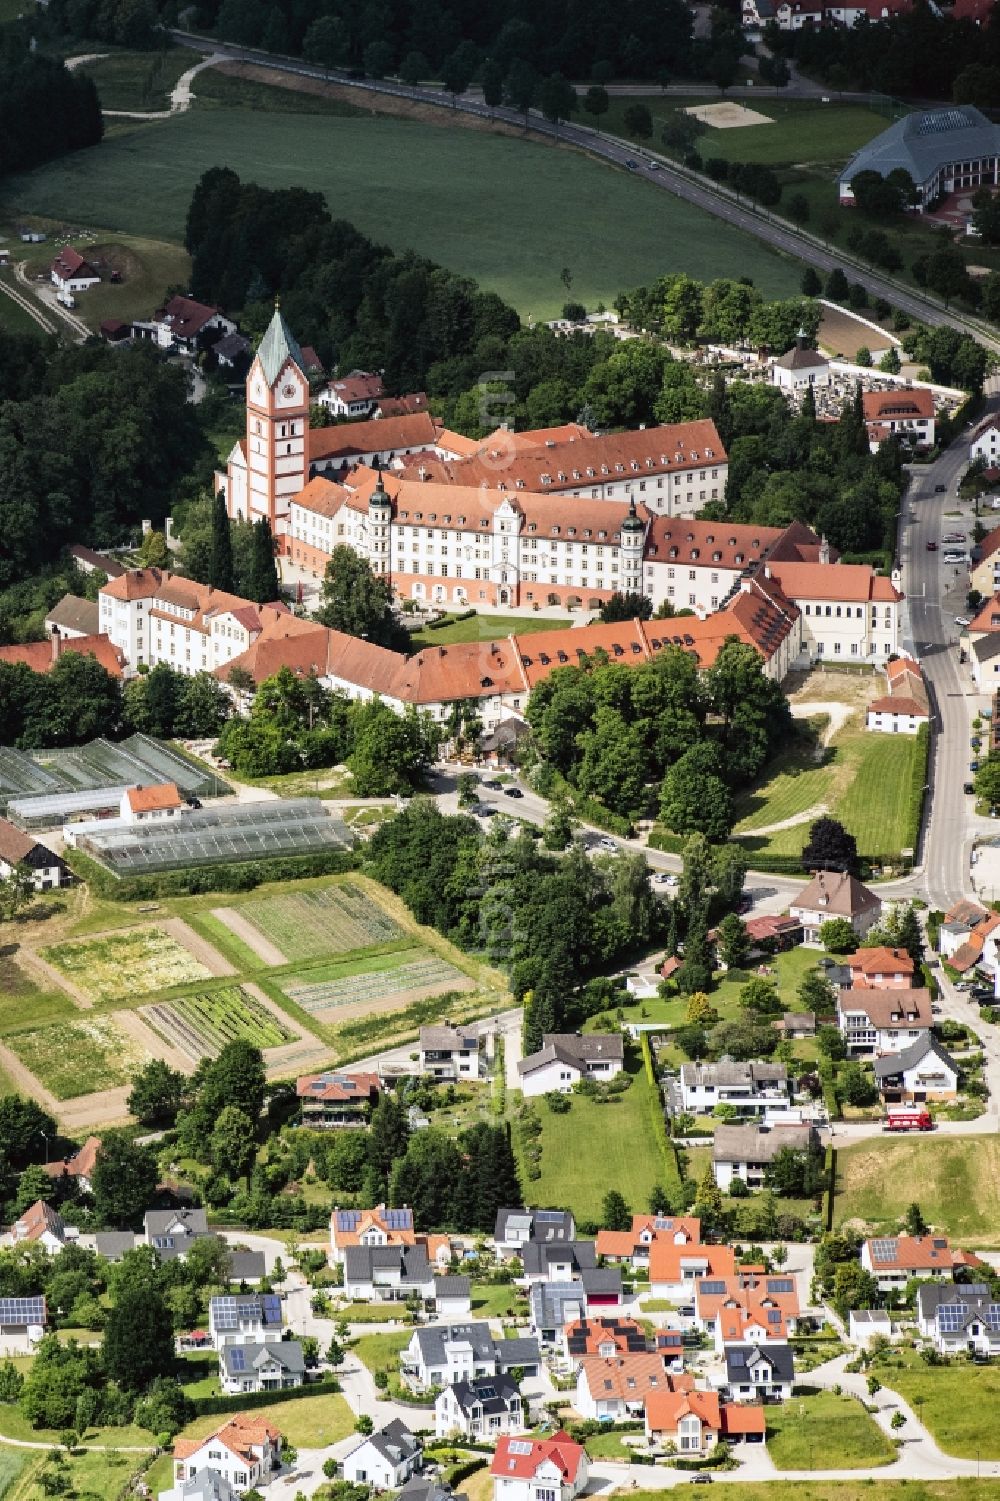 Aerial image Scheyern - Complex of buildings of the monastery Benediktinerabtei Scheyern on Schyrenplatz in Scheyern in the state Bavaria, Germany